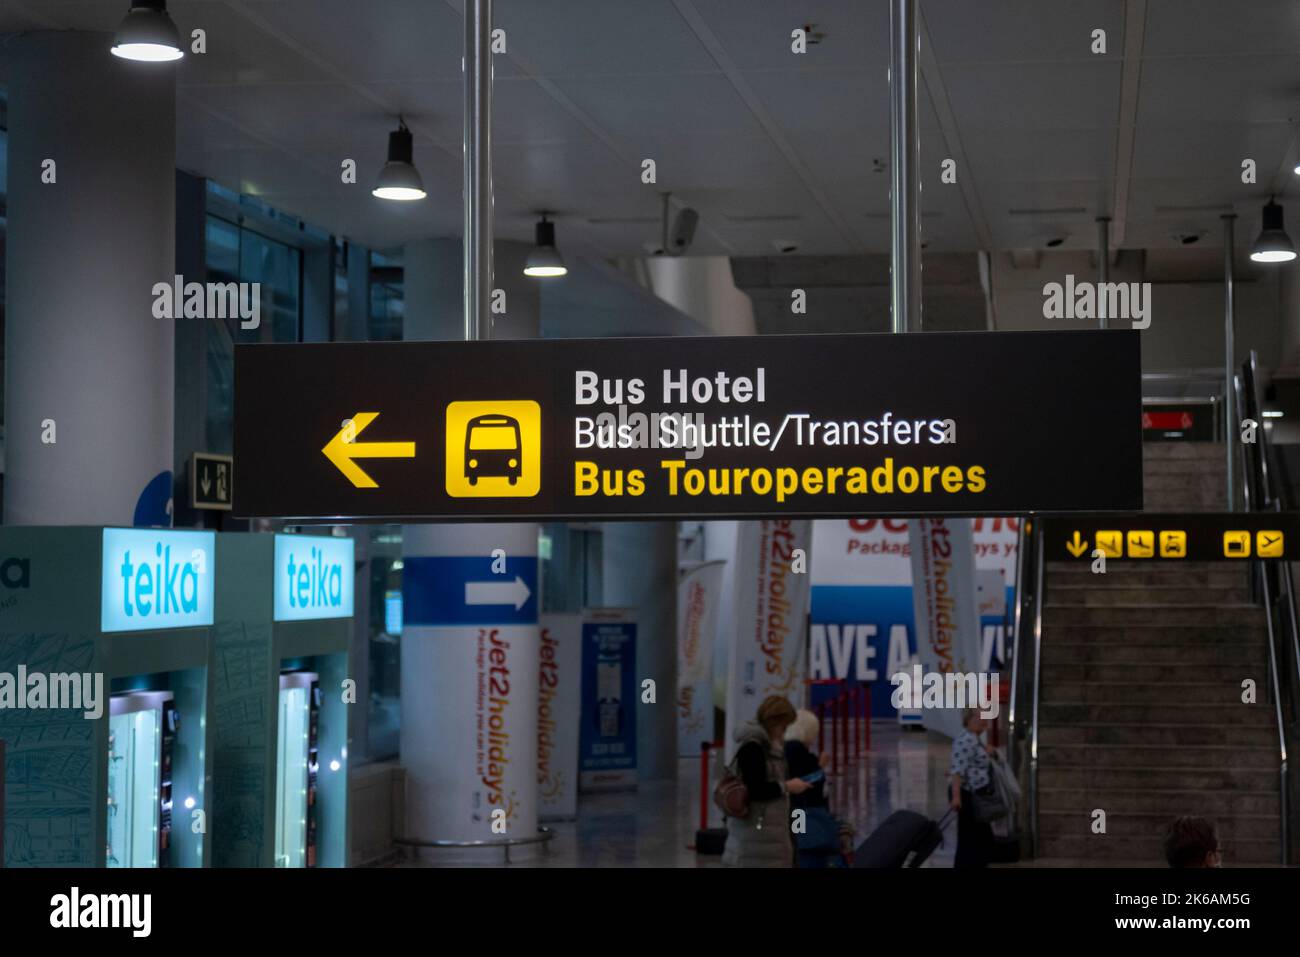 Firma presso l'aeroporto di Alicante che dirige i passeggeri alla zona degli autobus, per bus navetta, autobus dell'hotel e trasferimenti. Autobus Touroperadores. Collegamenti di trasporto Foto Stock